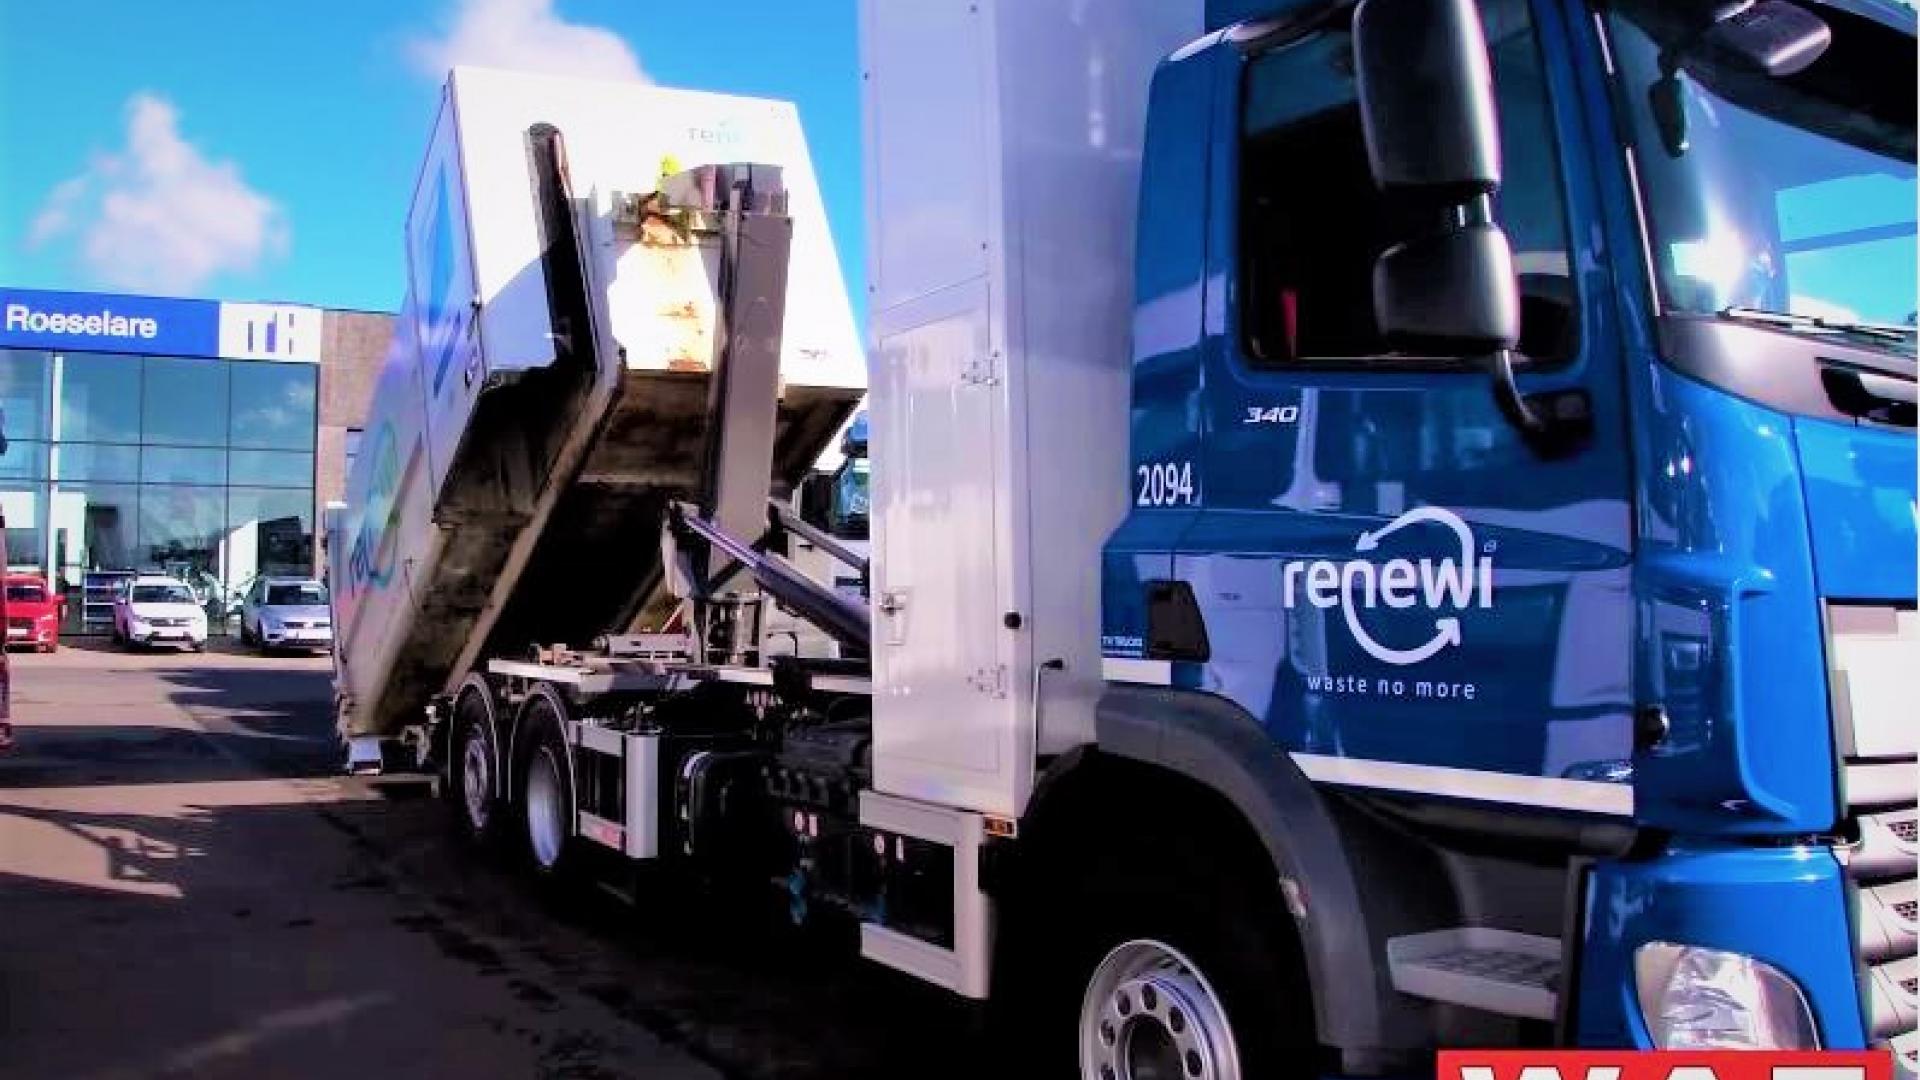 Destradata-Fahrzeug für Renewi Belgien